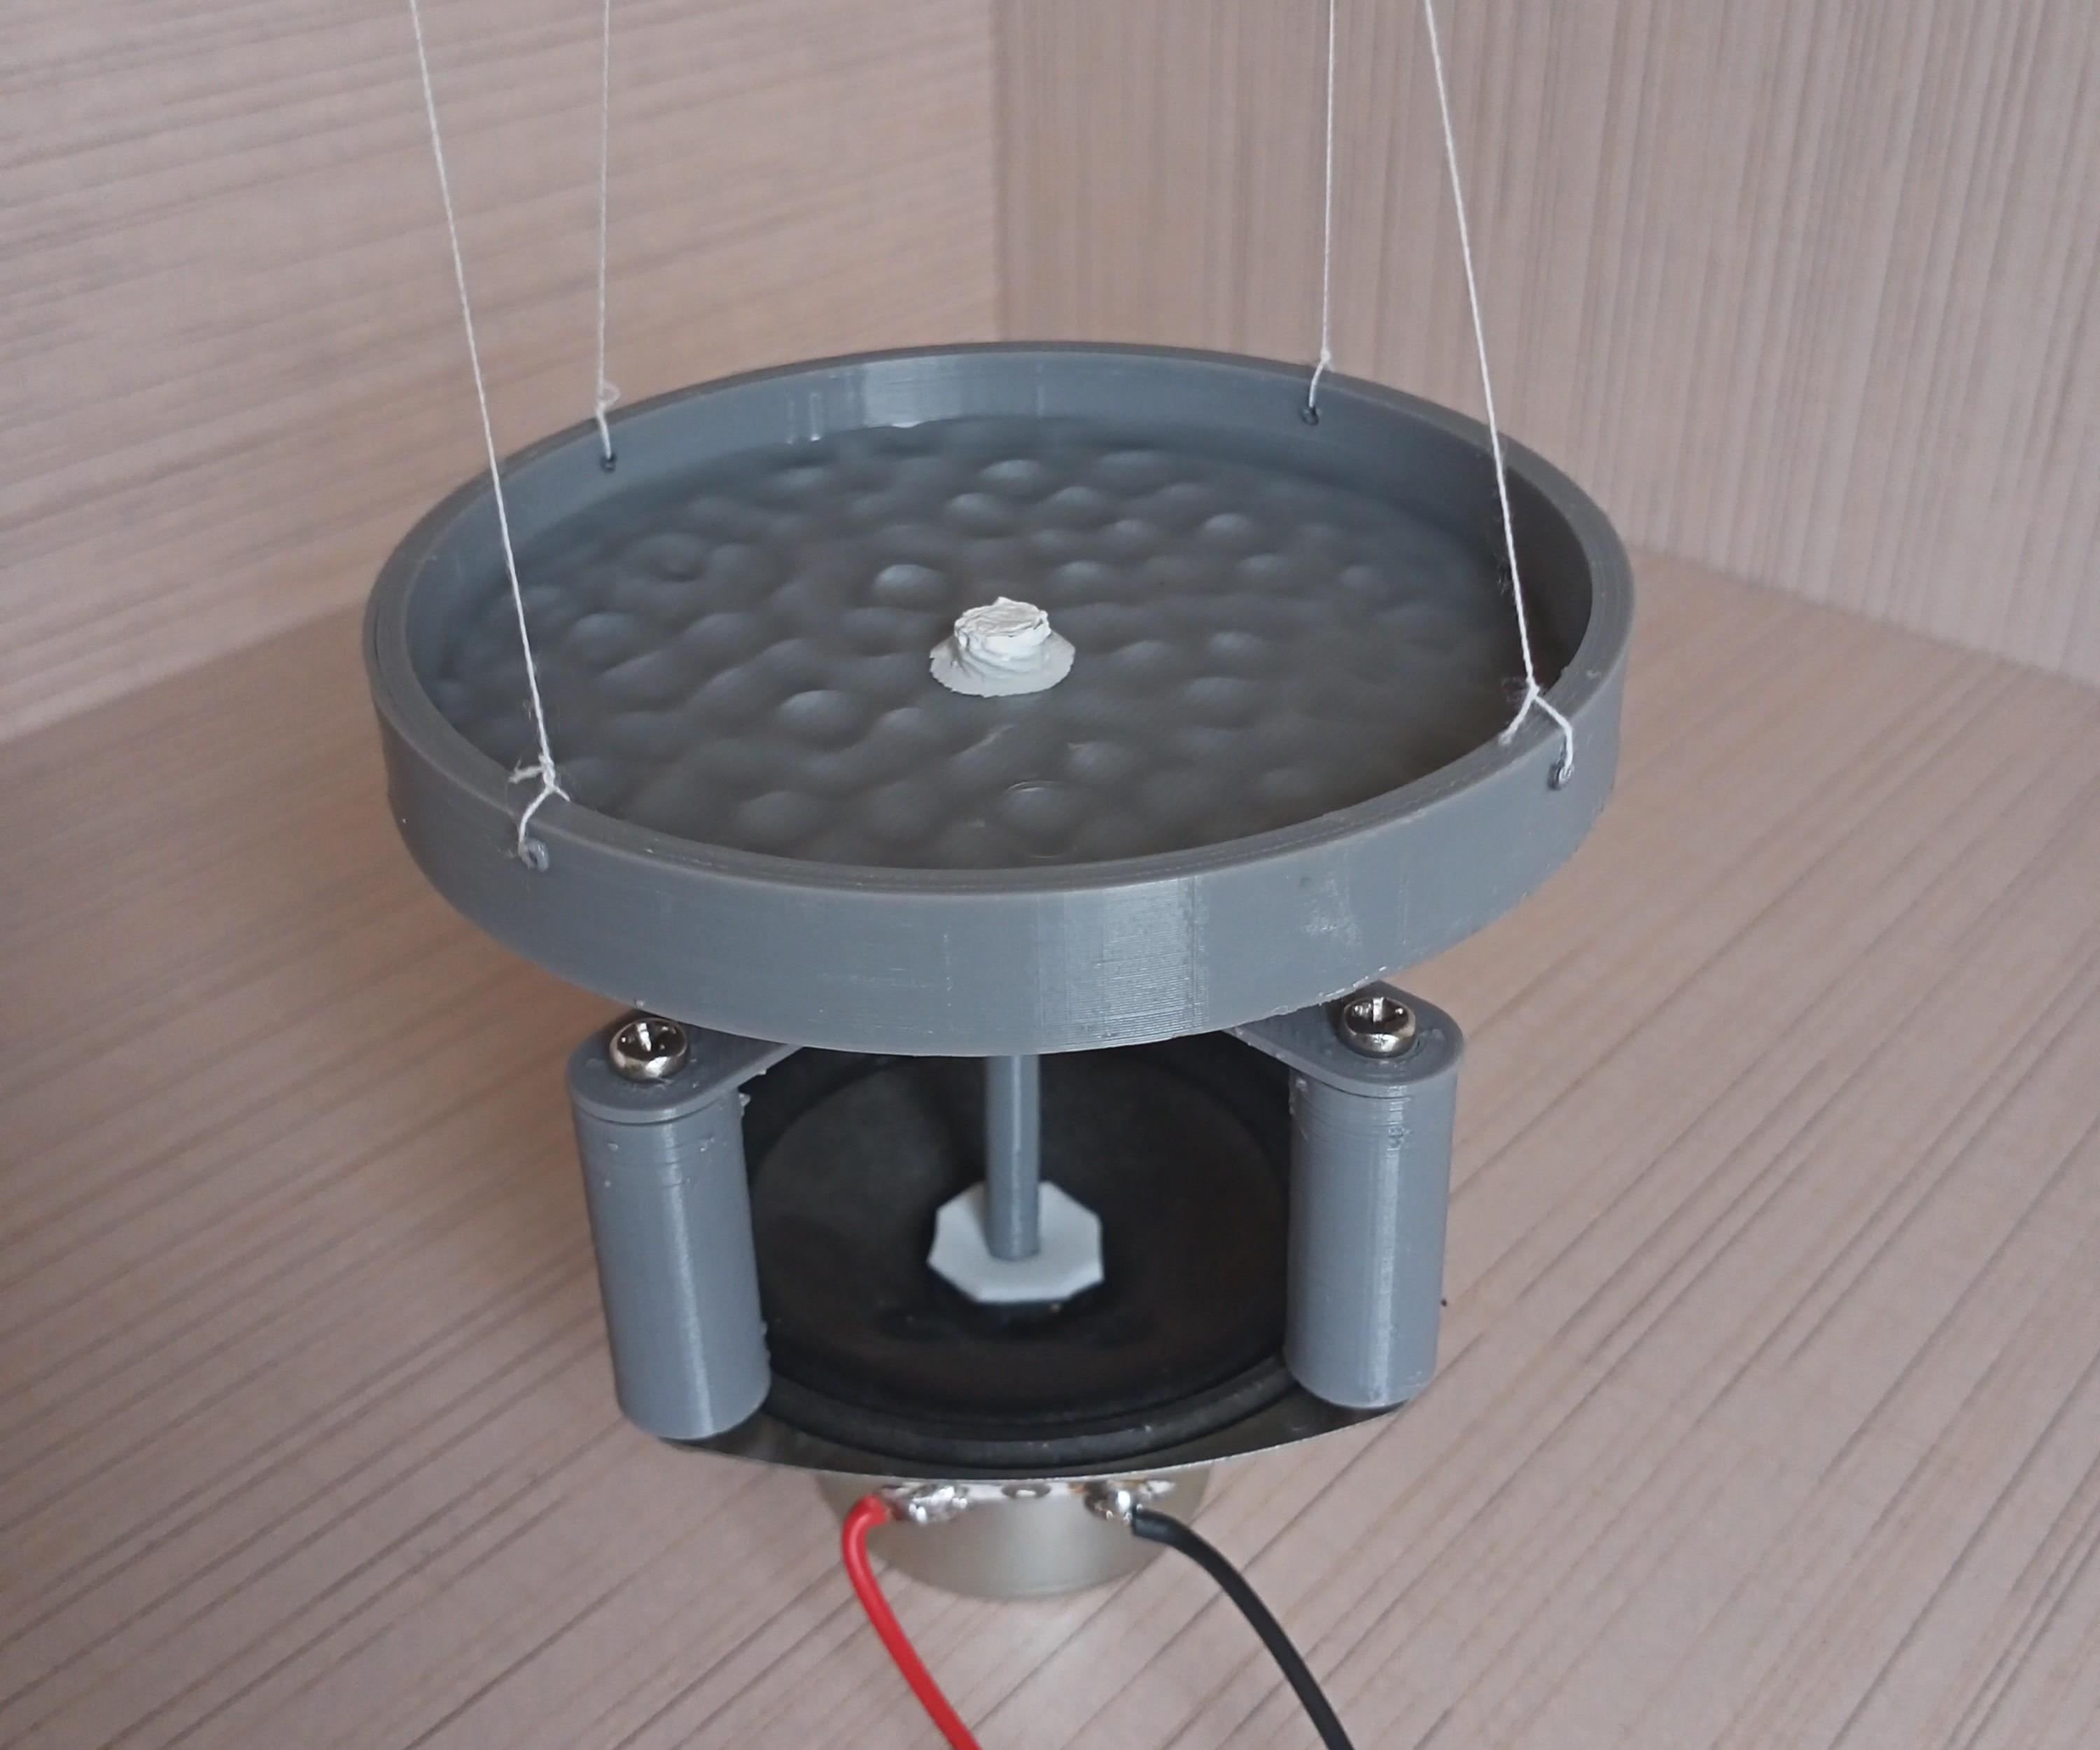 Visualize Sound Using Water | Cymatics